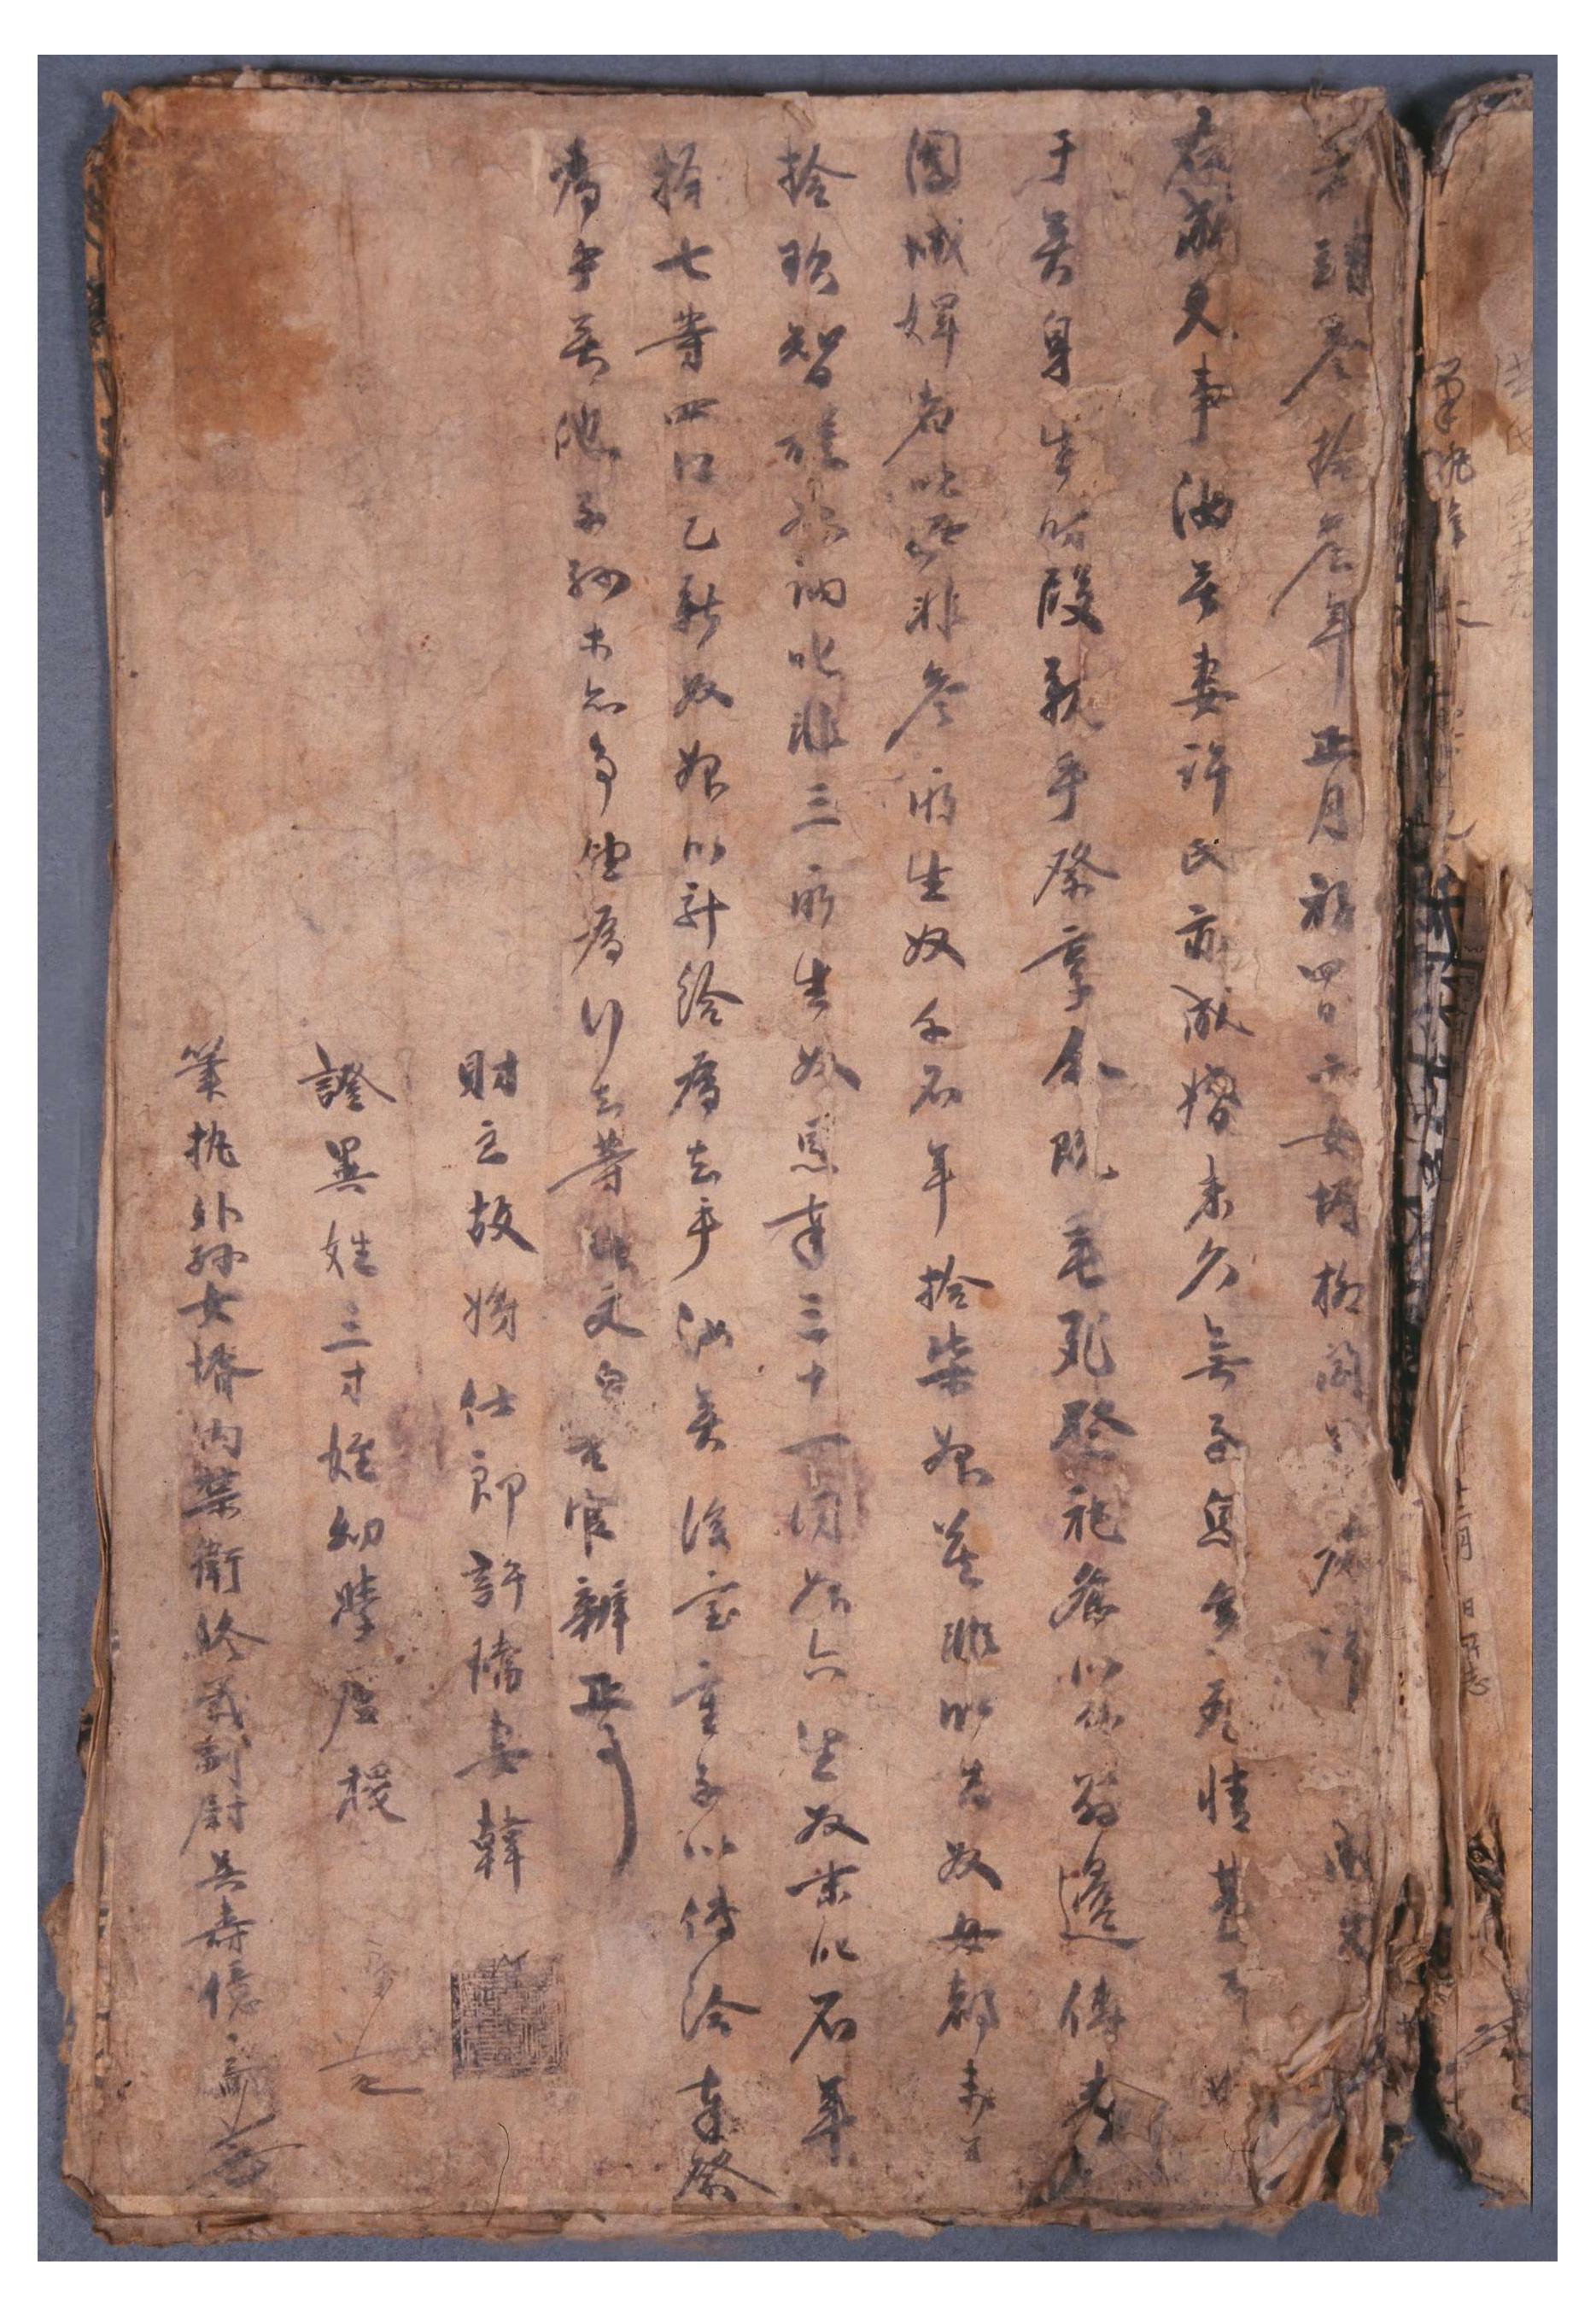 1530년 시노 김명동이 아무개와 논을 교환하고, 부족한 부분을 목면을 받고 내다파는 명문. 